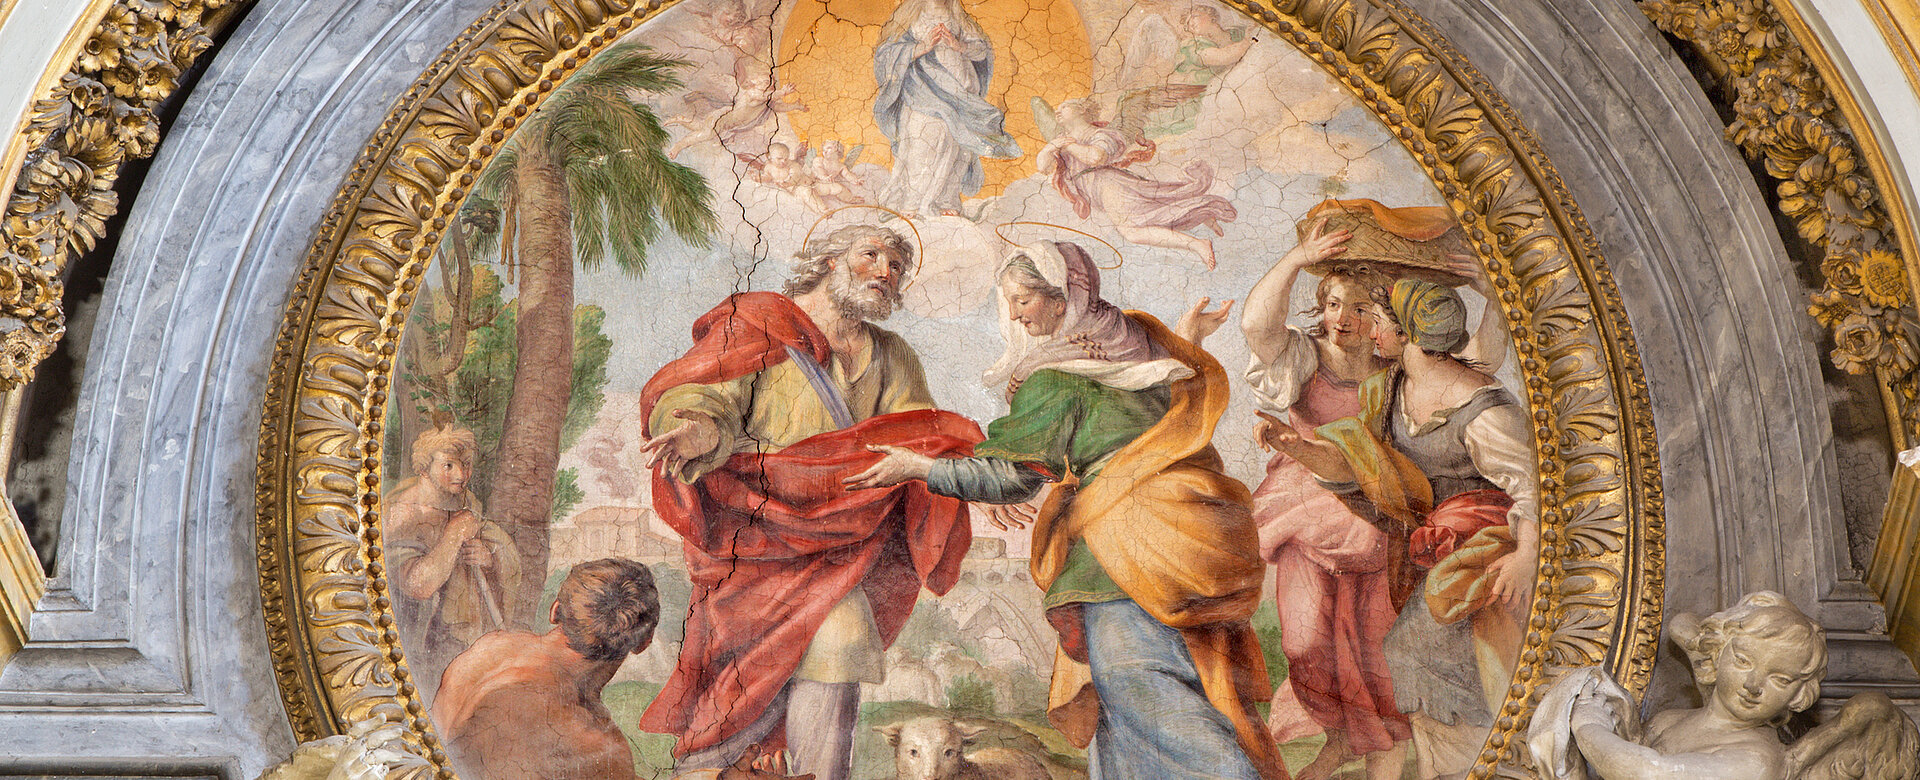 Das Fresko der Prophezeiung an Joachim und Anna in der Kirche Chiesa di Santa Maria dell Orto von Giovanni Baglione (1566 - 1643).